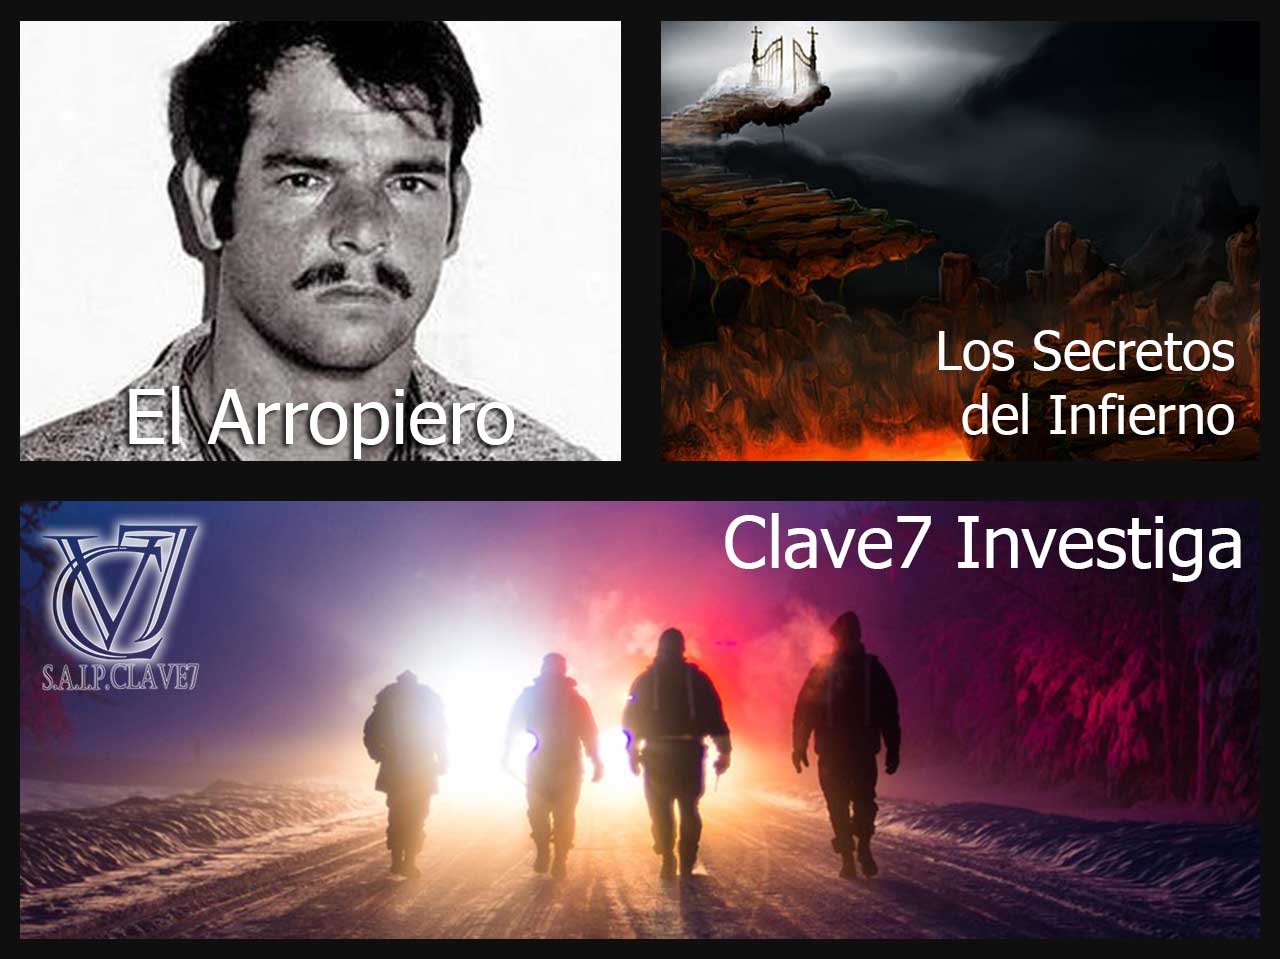 El Arropiero - Los Secretos del Infierno 2 - Clave7 Investiga